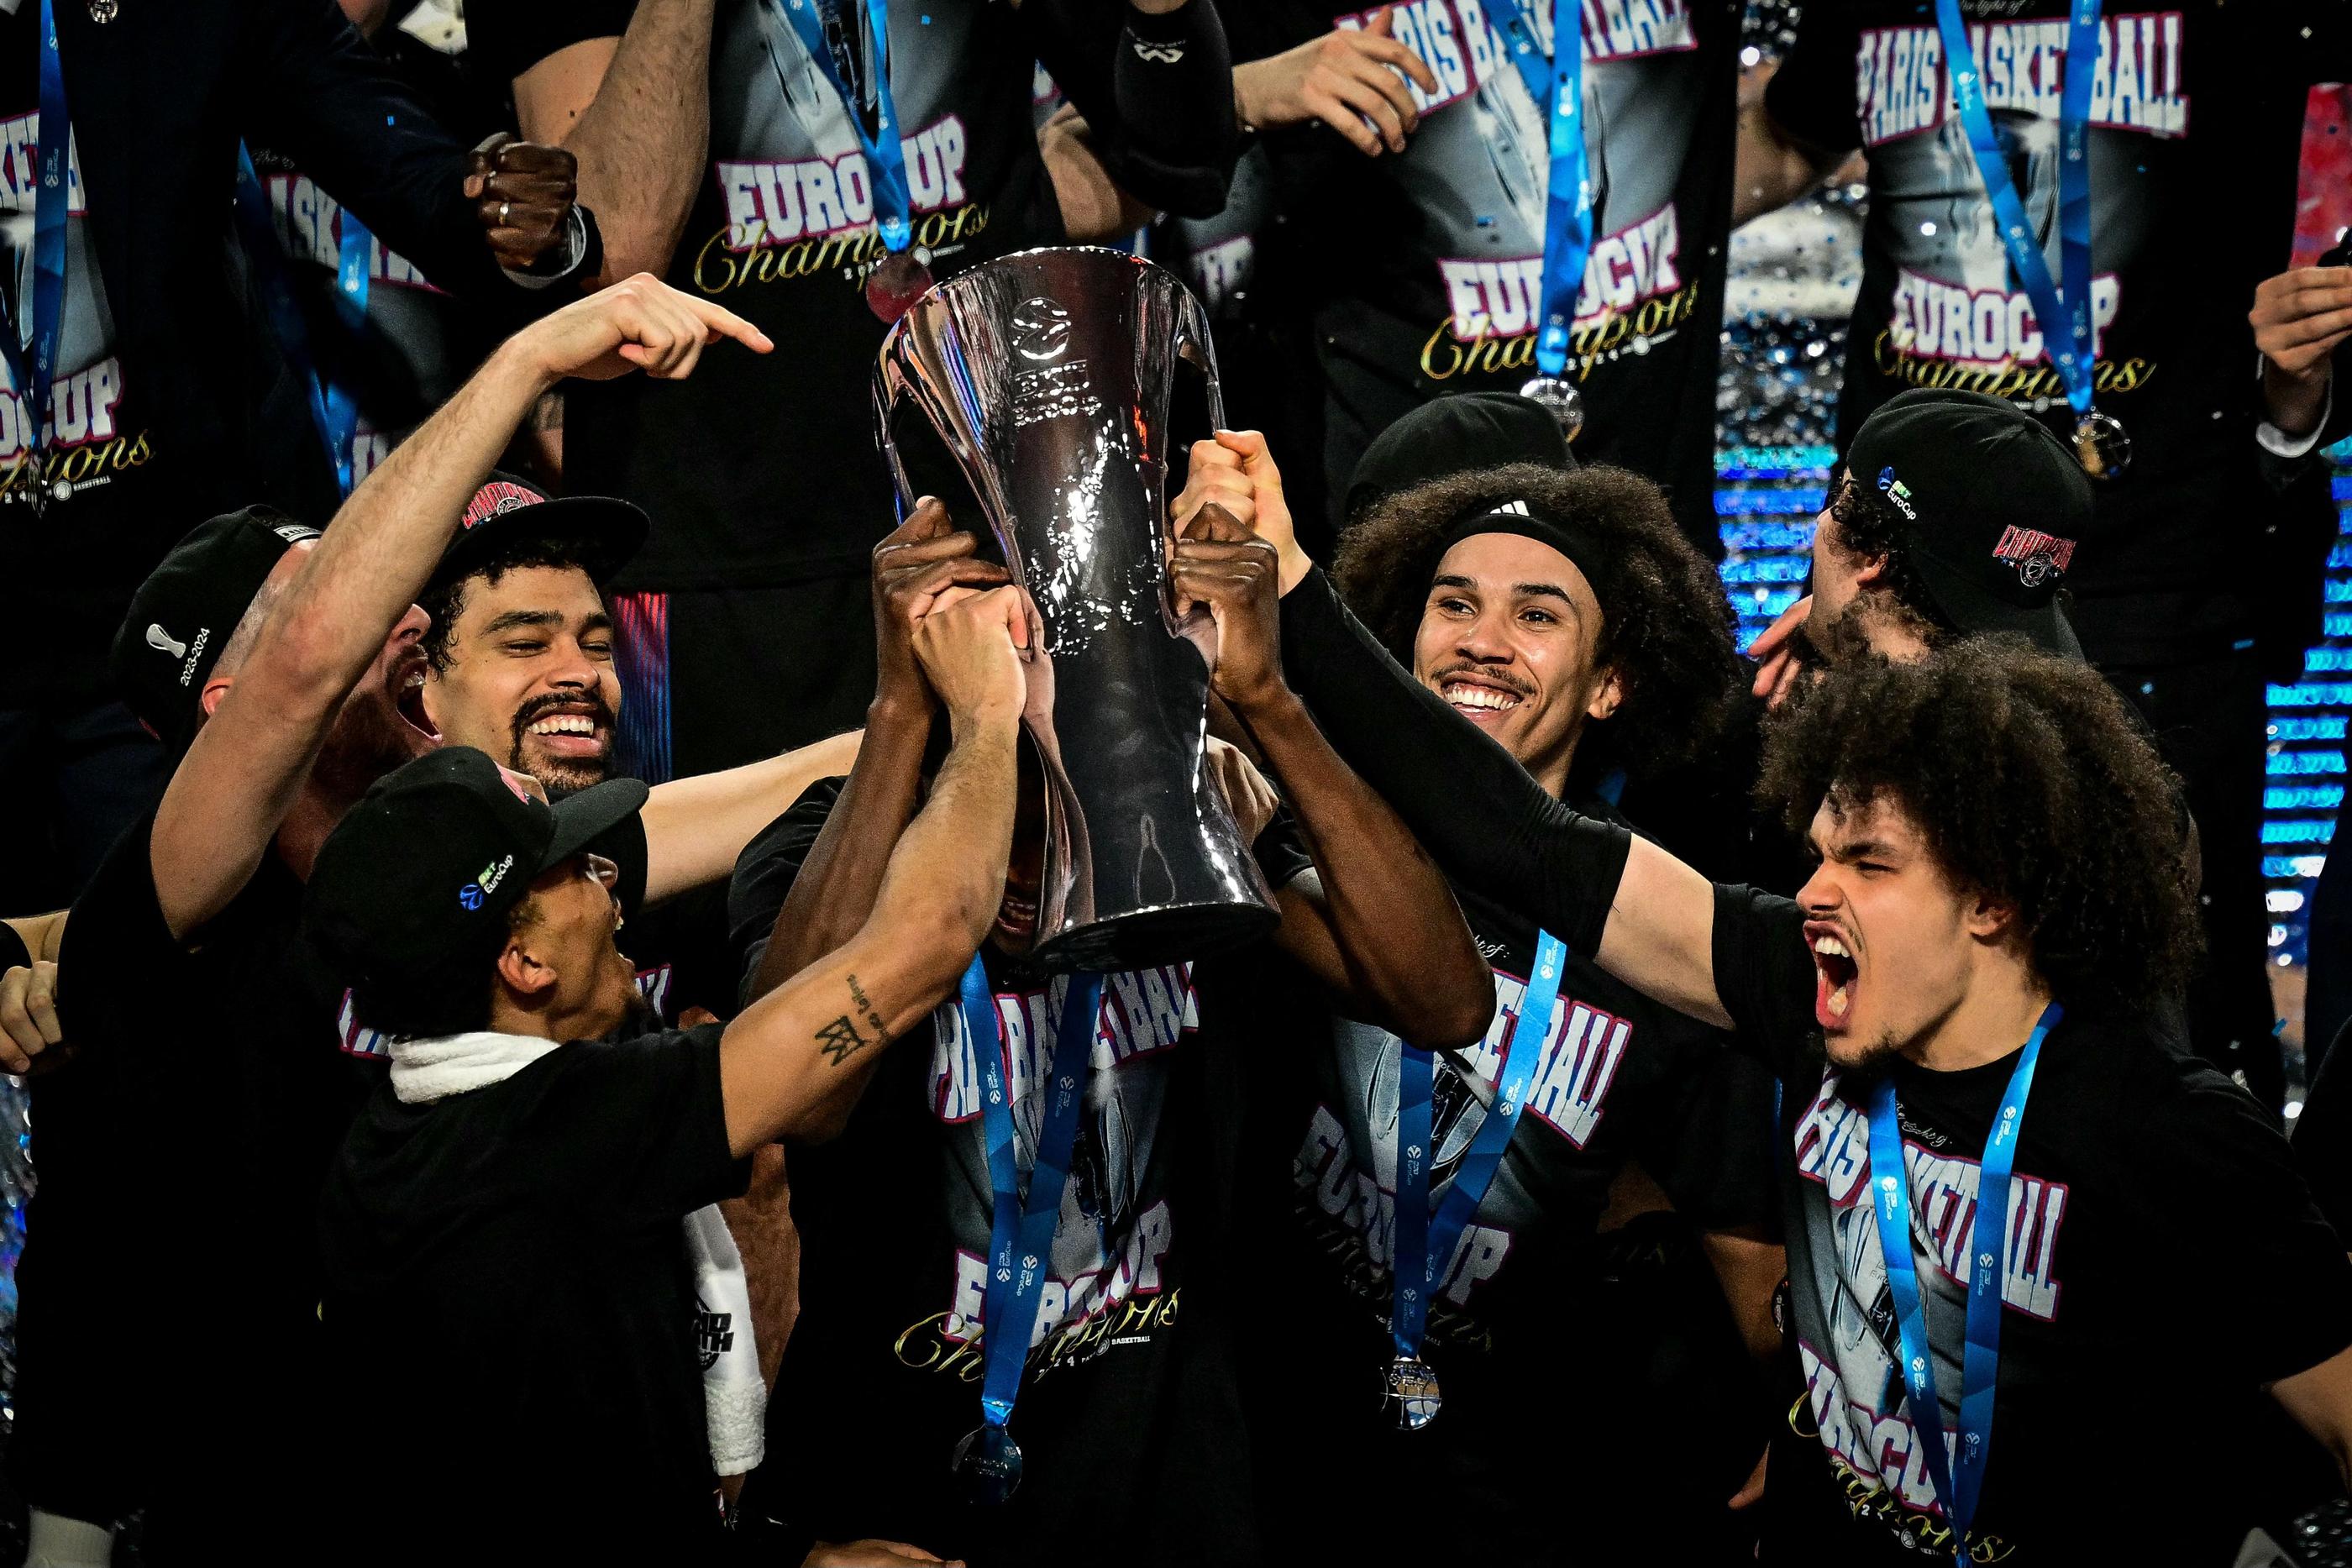 Les Parisiens soulèvent leur deuxième trophée de la saison et visent désormais le championnat. (Photo by OLIVIER CHASSIGNOLE / AFP)